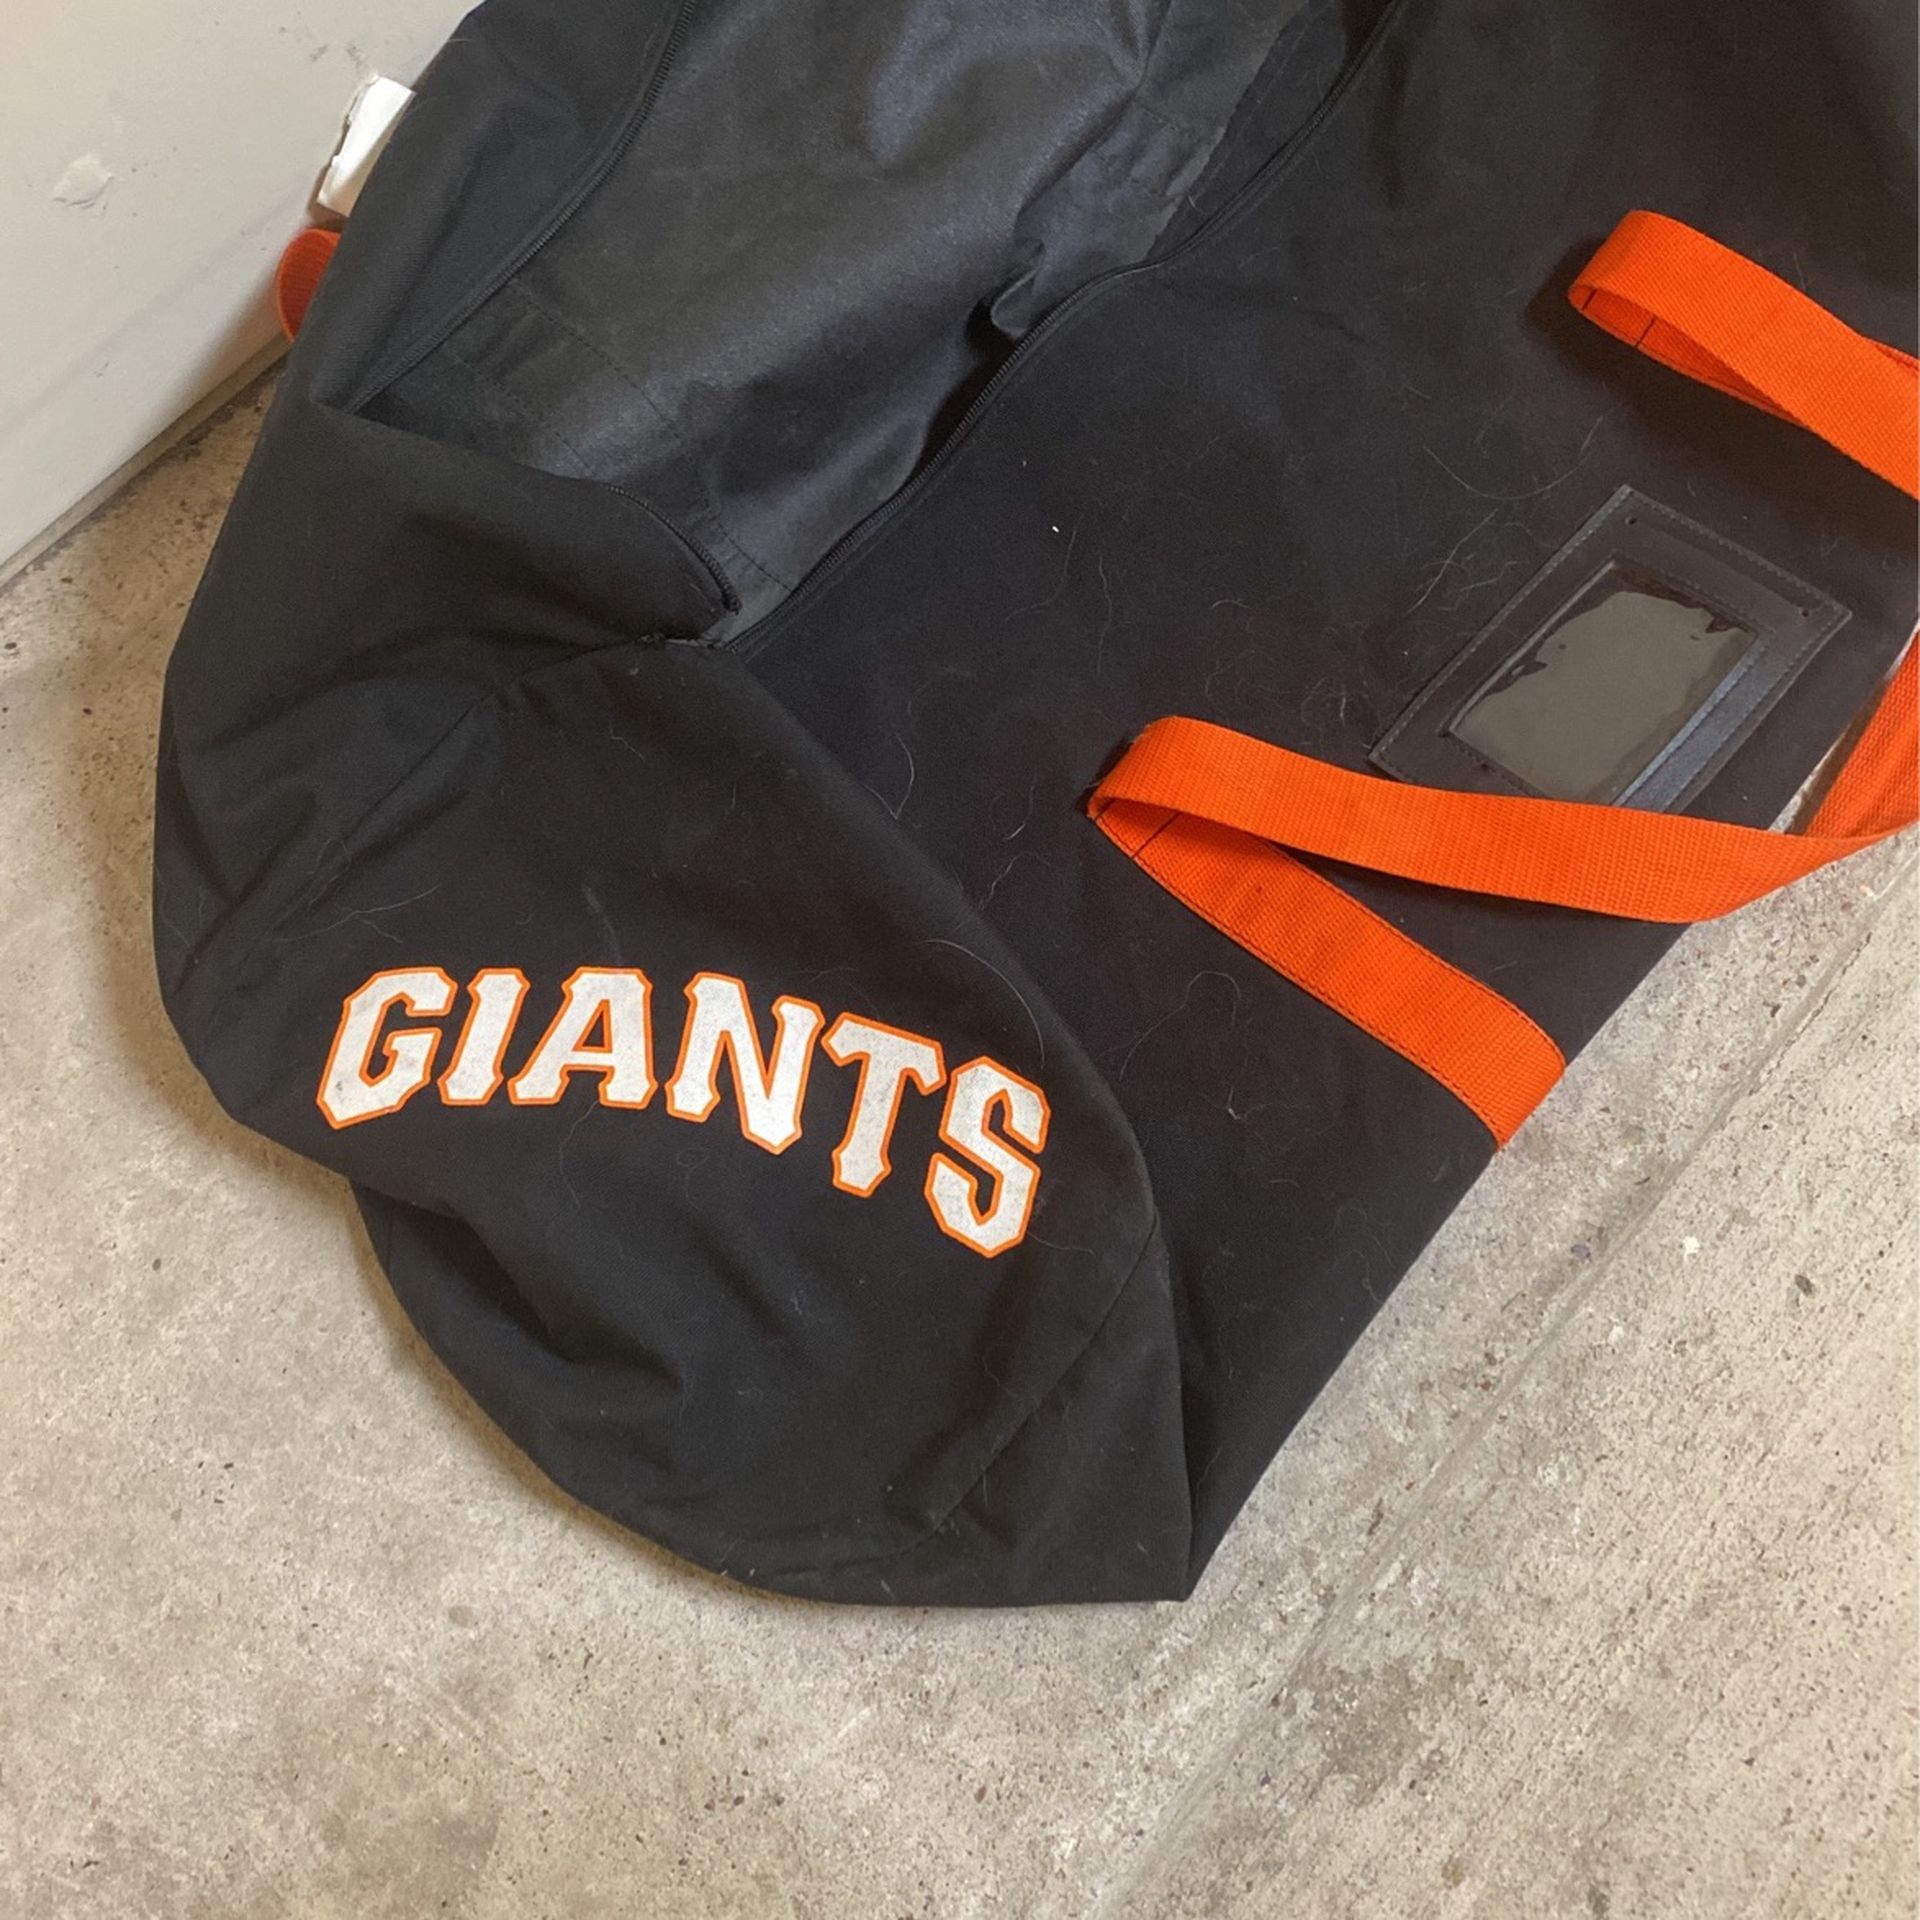 Giants Duffle Bag (zipper broken)